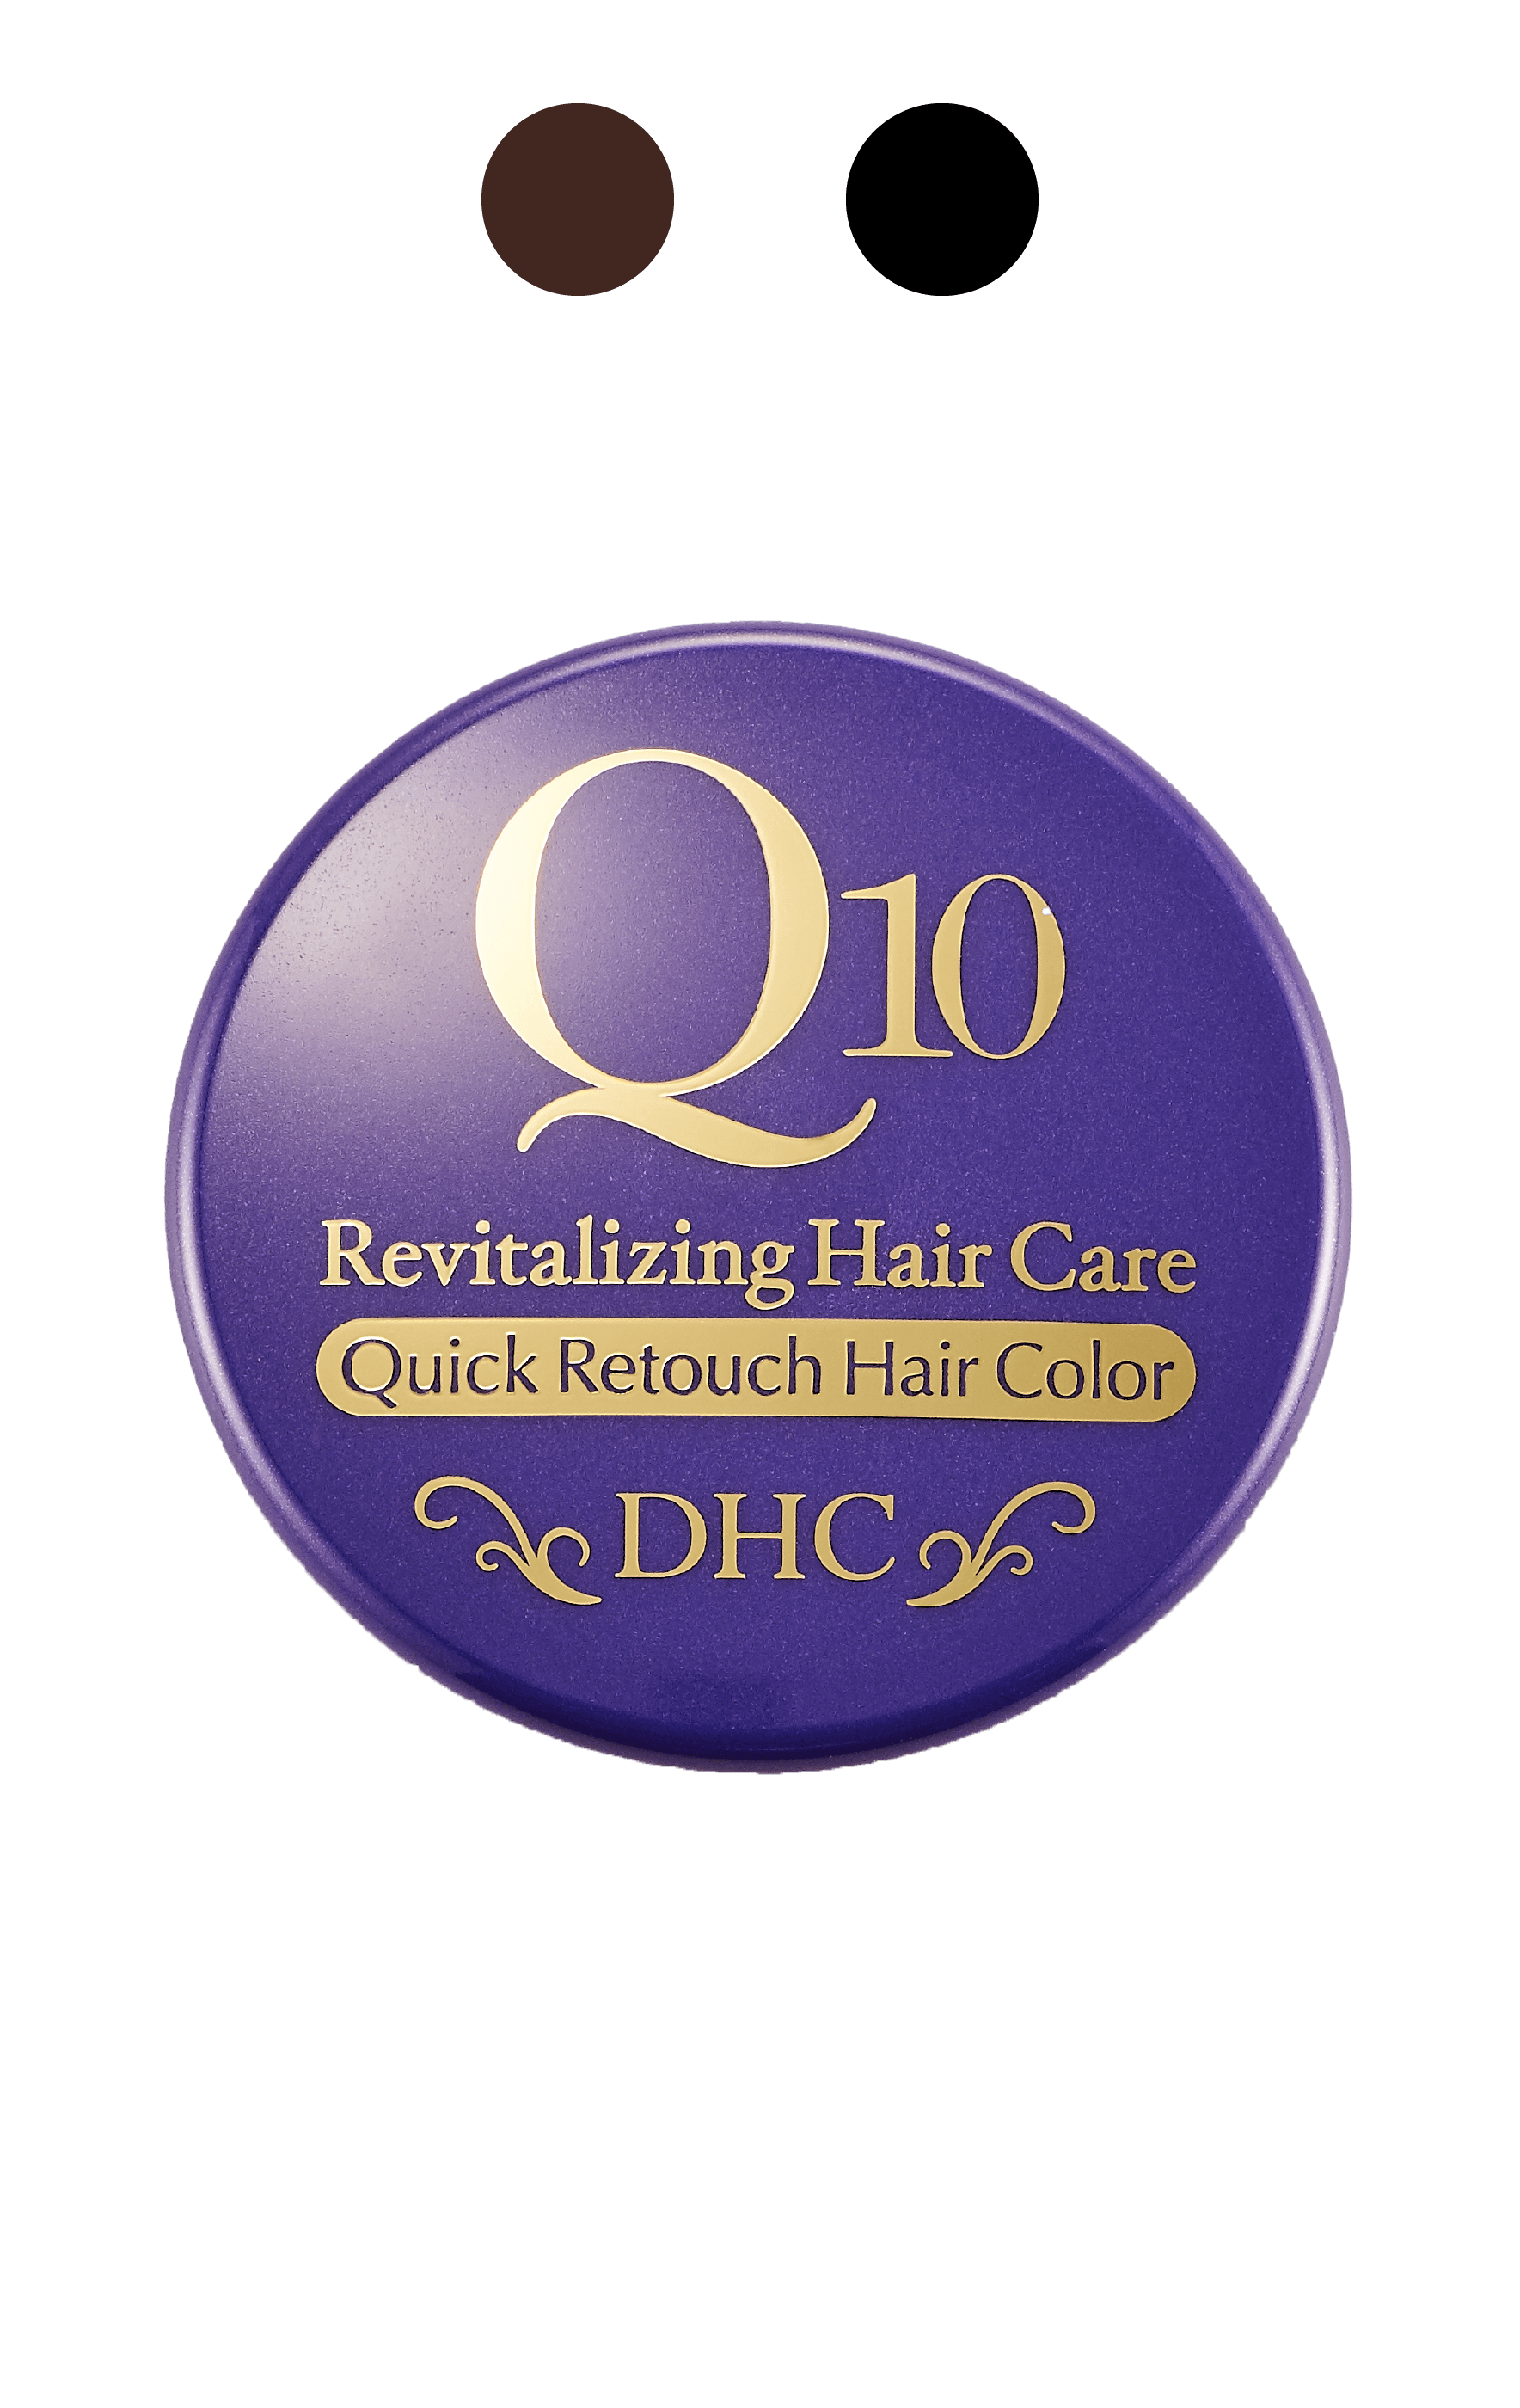 Q10 Quick Retouch Hair Color 45g